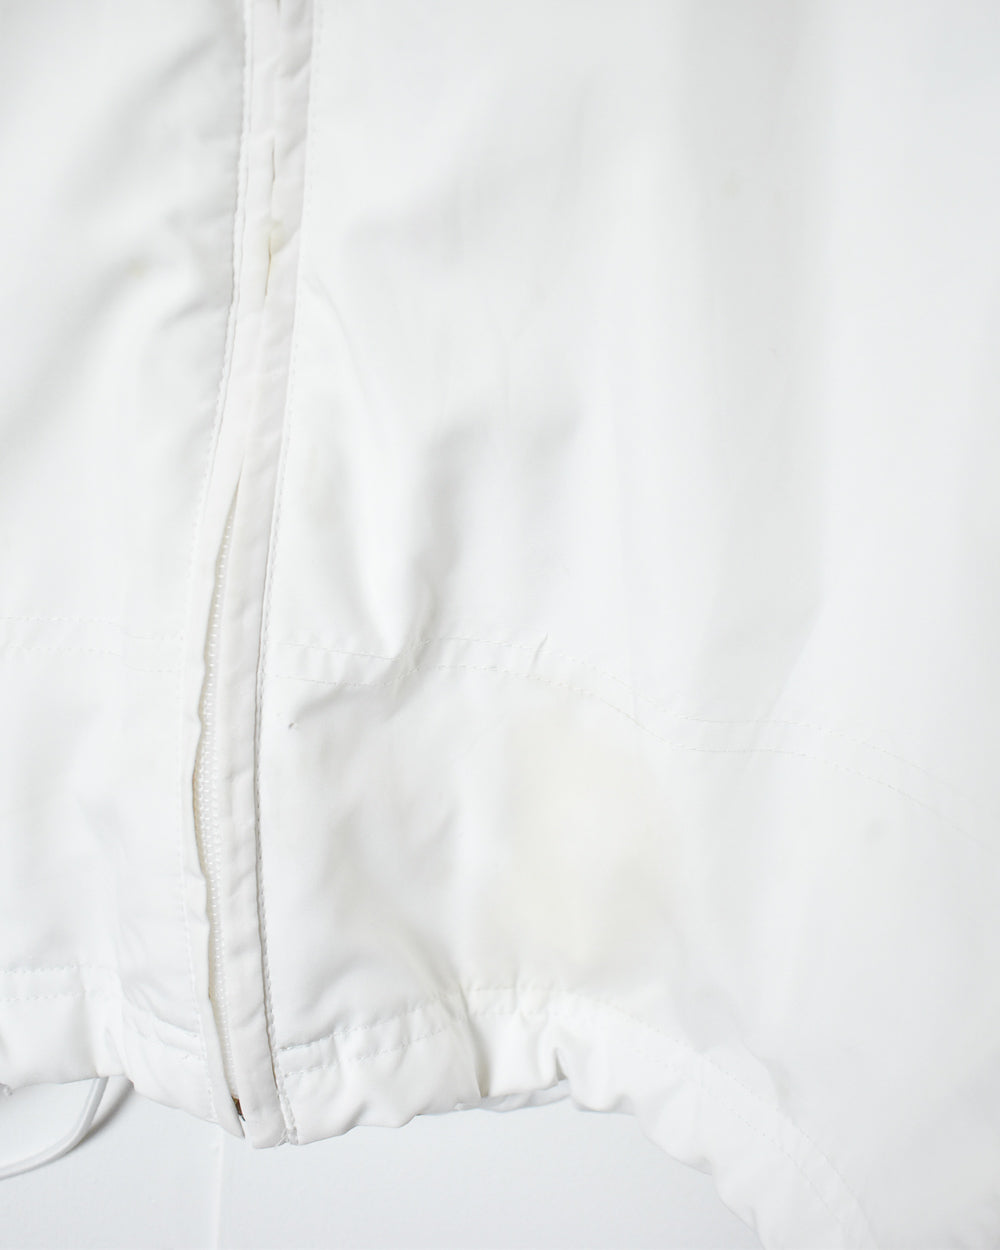 White Adidas Powerbar Jacket - X-Large